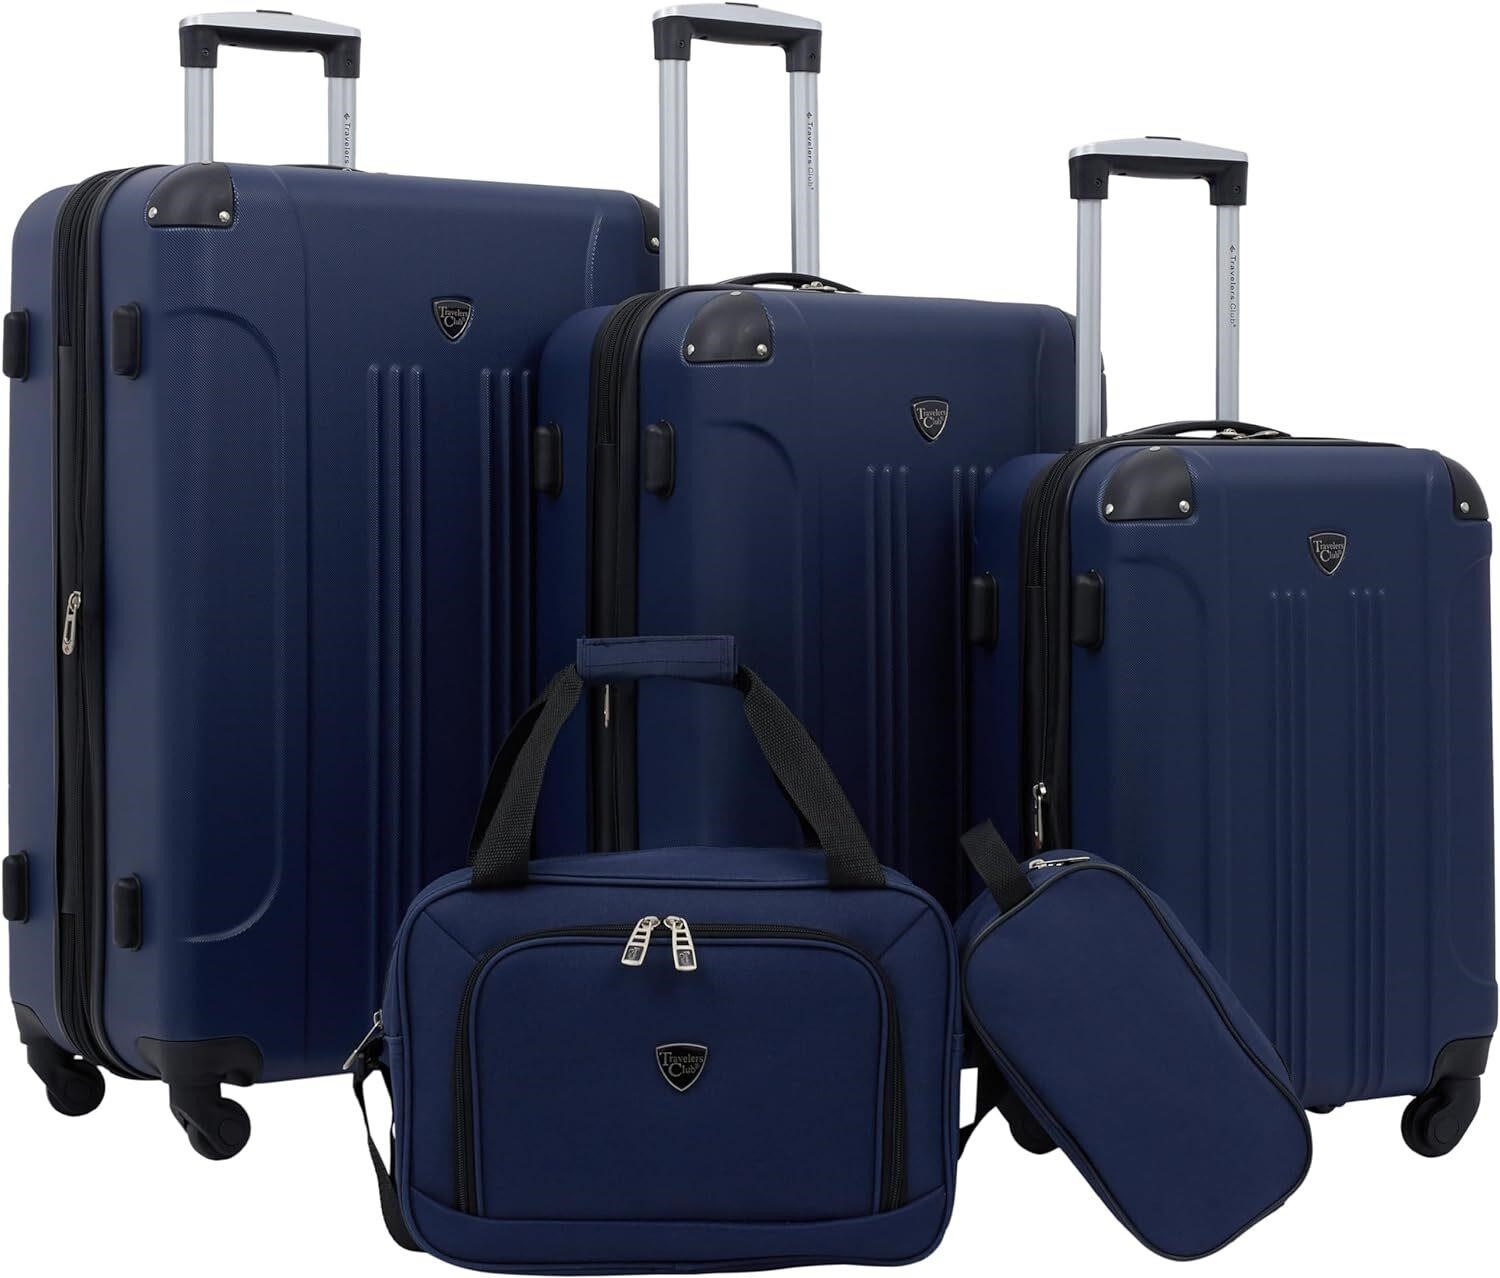 Travelers Club Hardside Luggage  5pc Navy